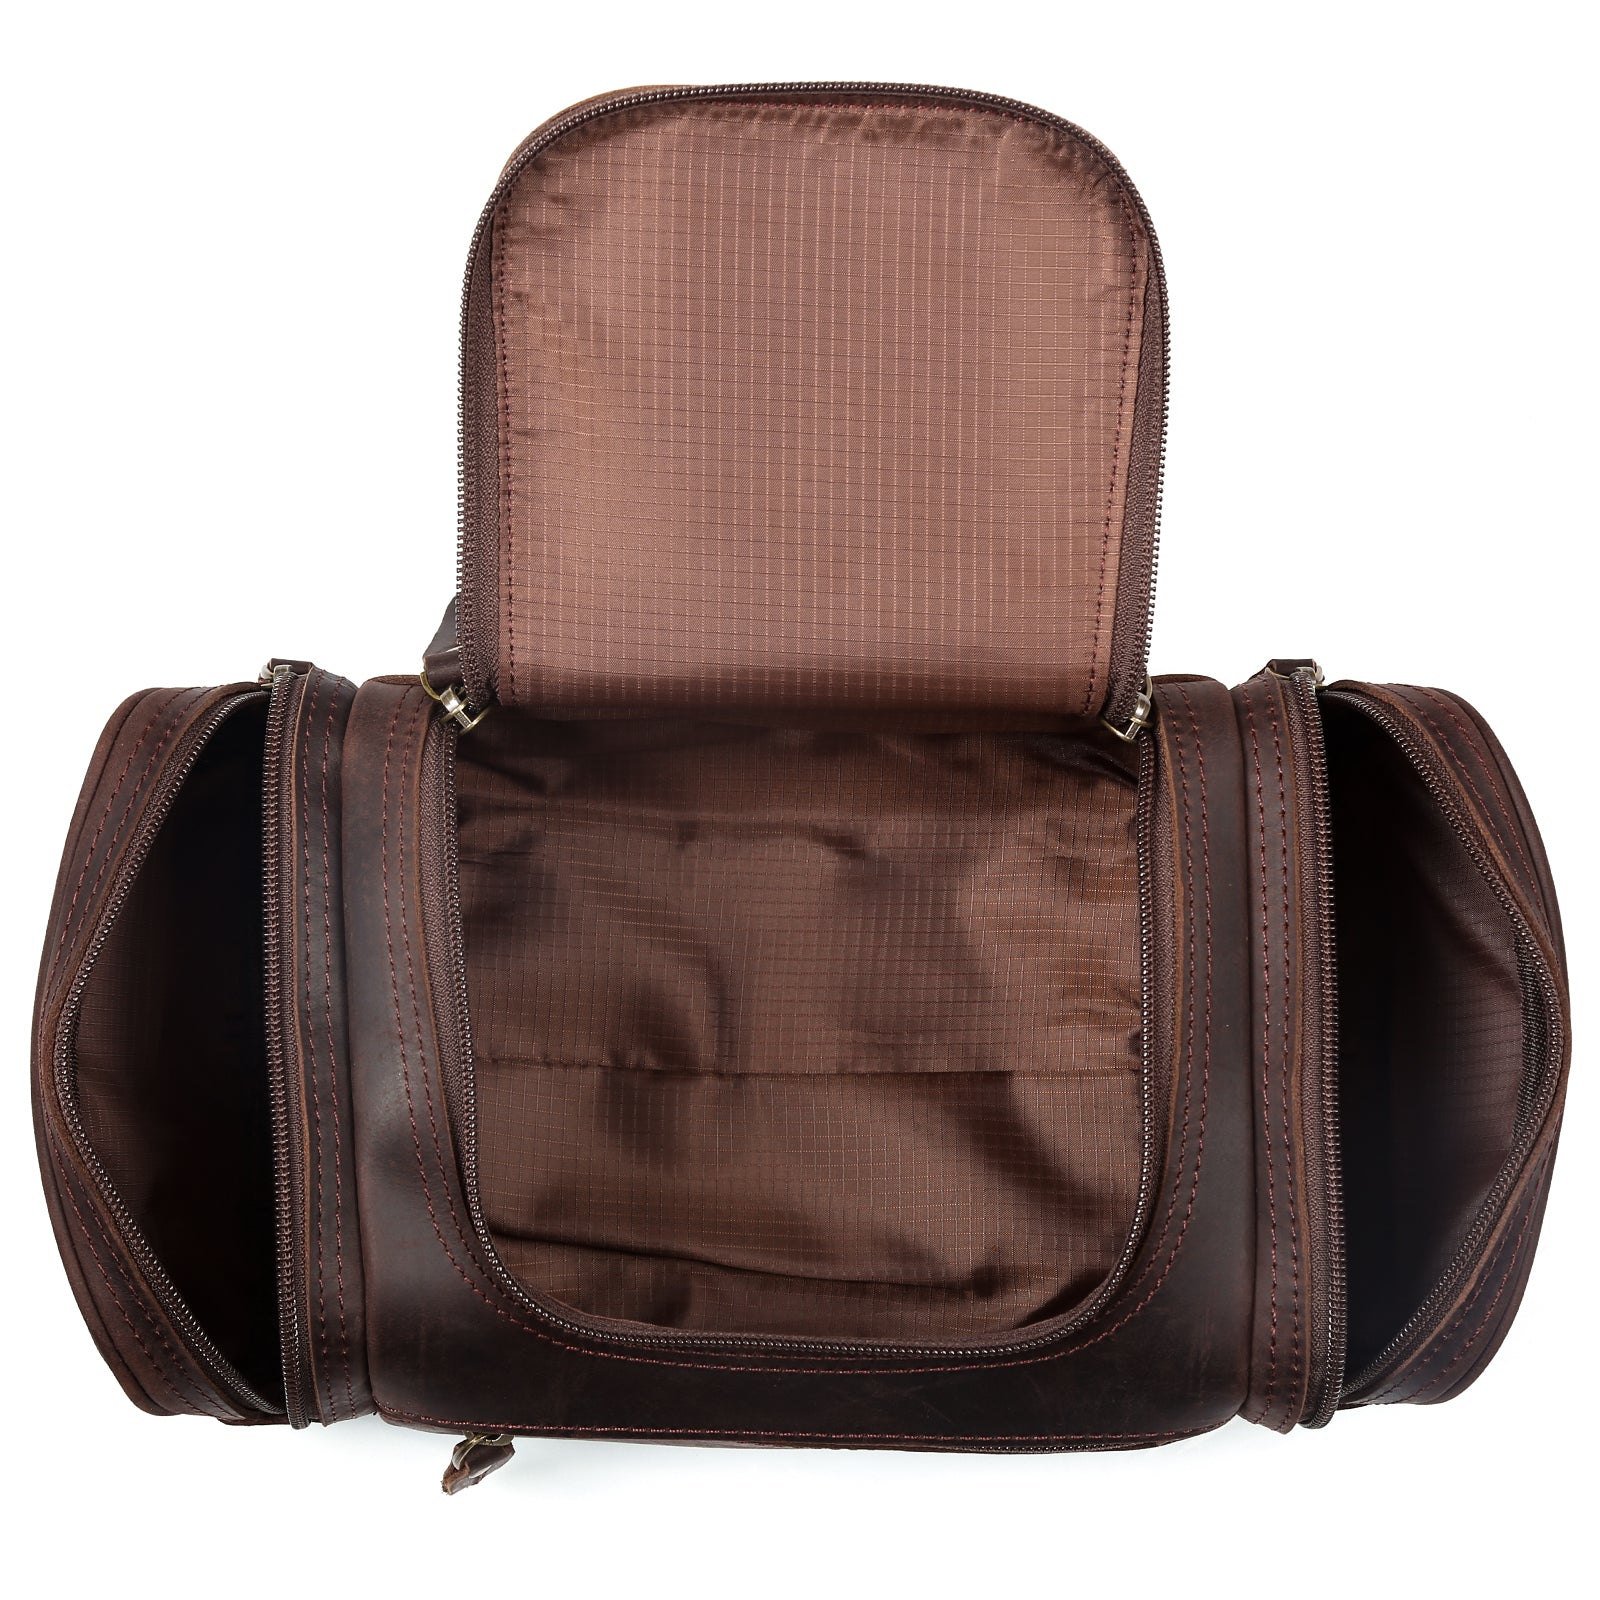 Polare Original Polare Vintage Full Grain Leather Handmade Travel Toiletry Bag for Men - Dopp Kit - Shaving Kit with YKK Metal Zippers